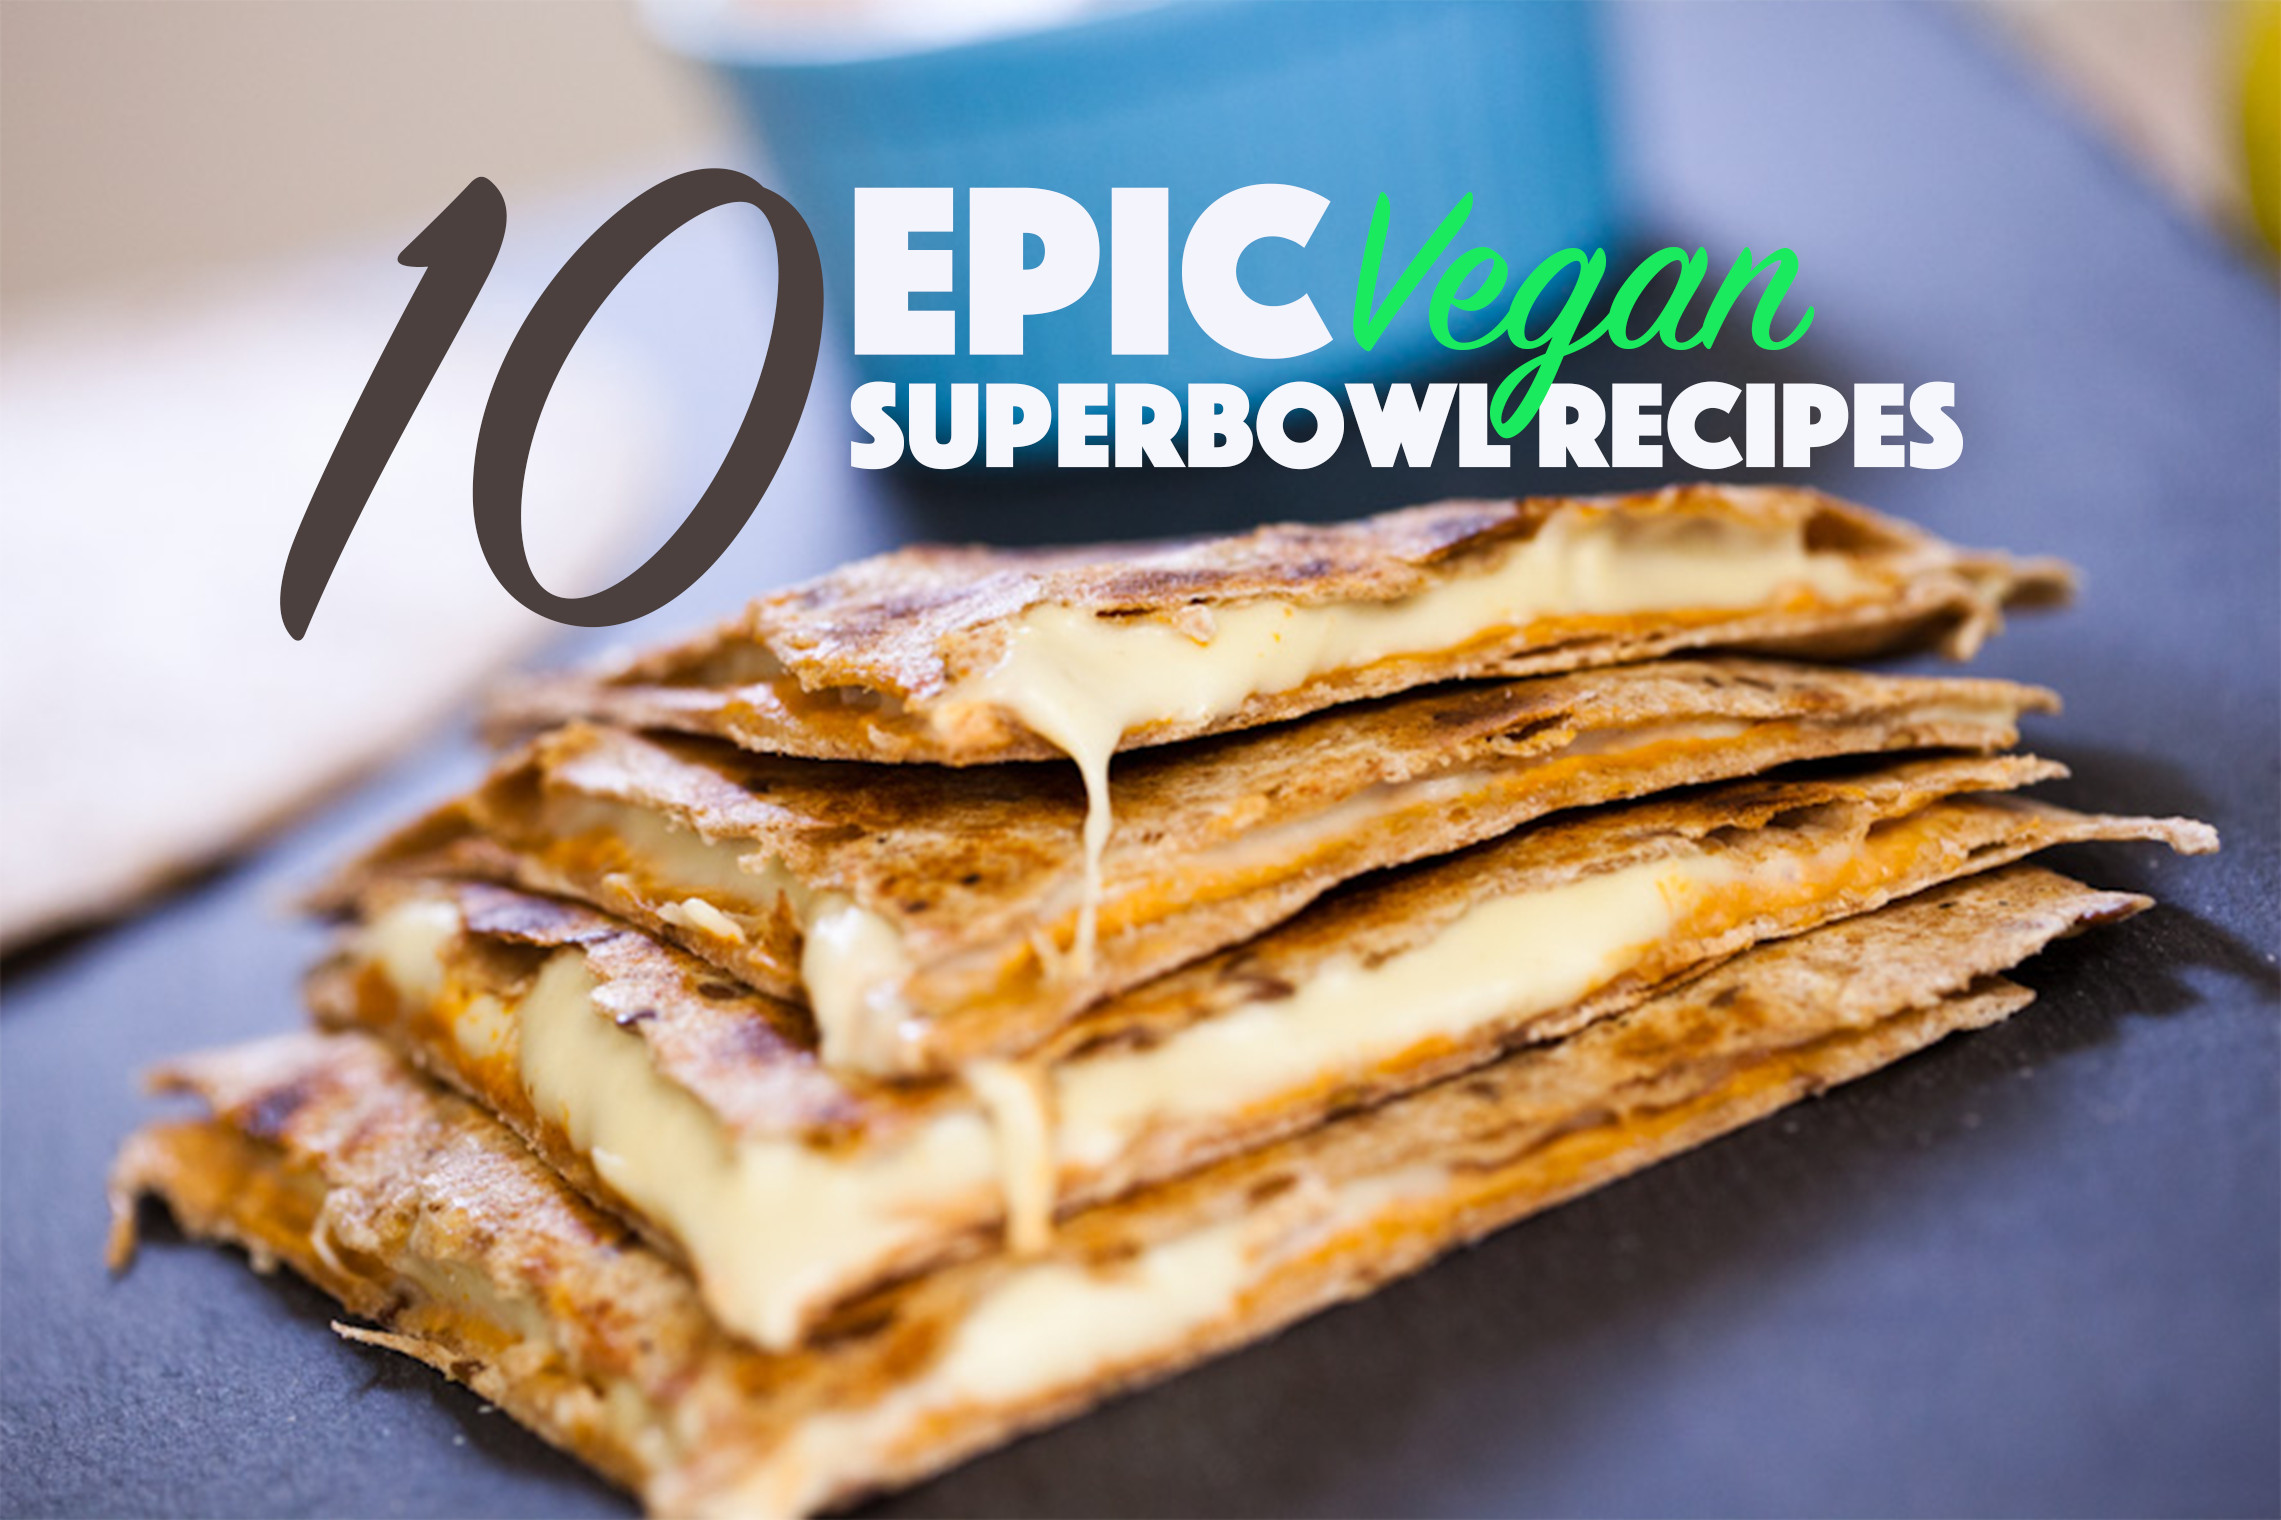 Vegan Super Bowl Recipes
 10 Epic Vegan Super Bowl Recipes